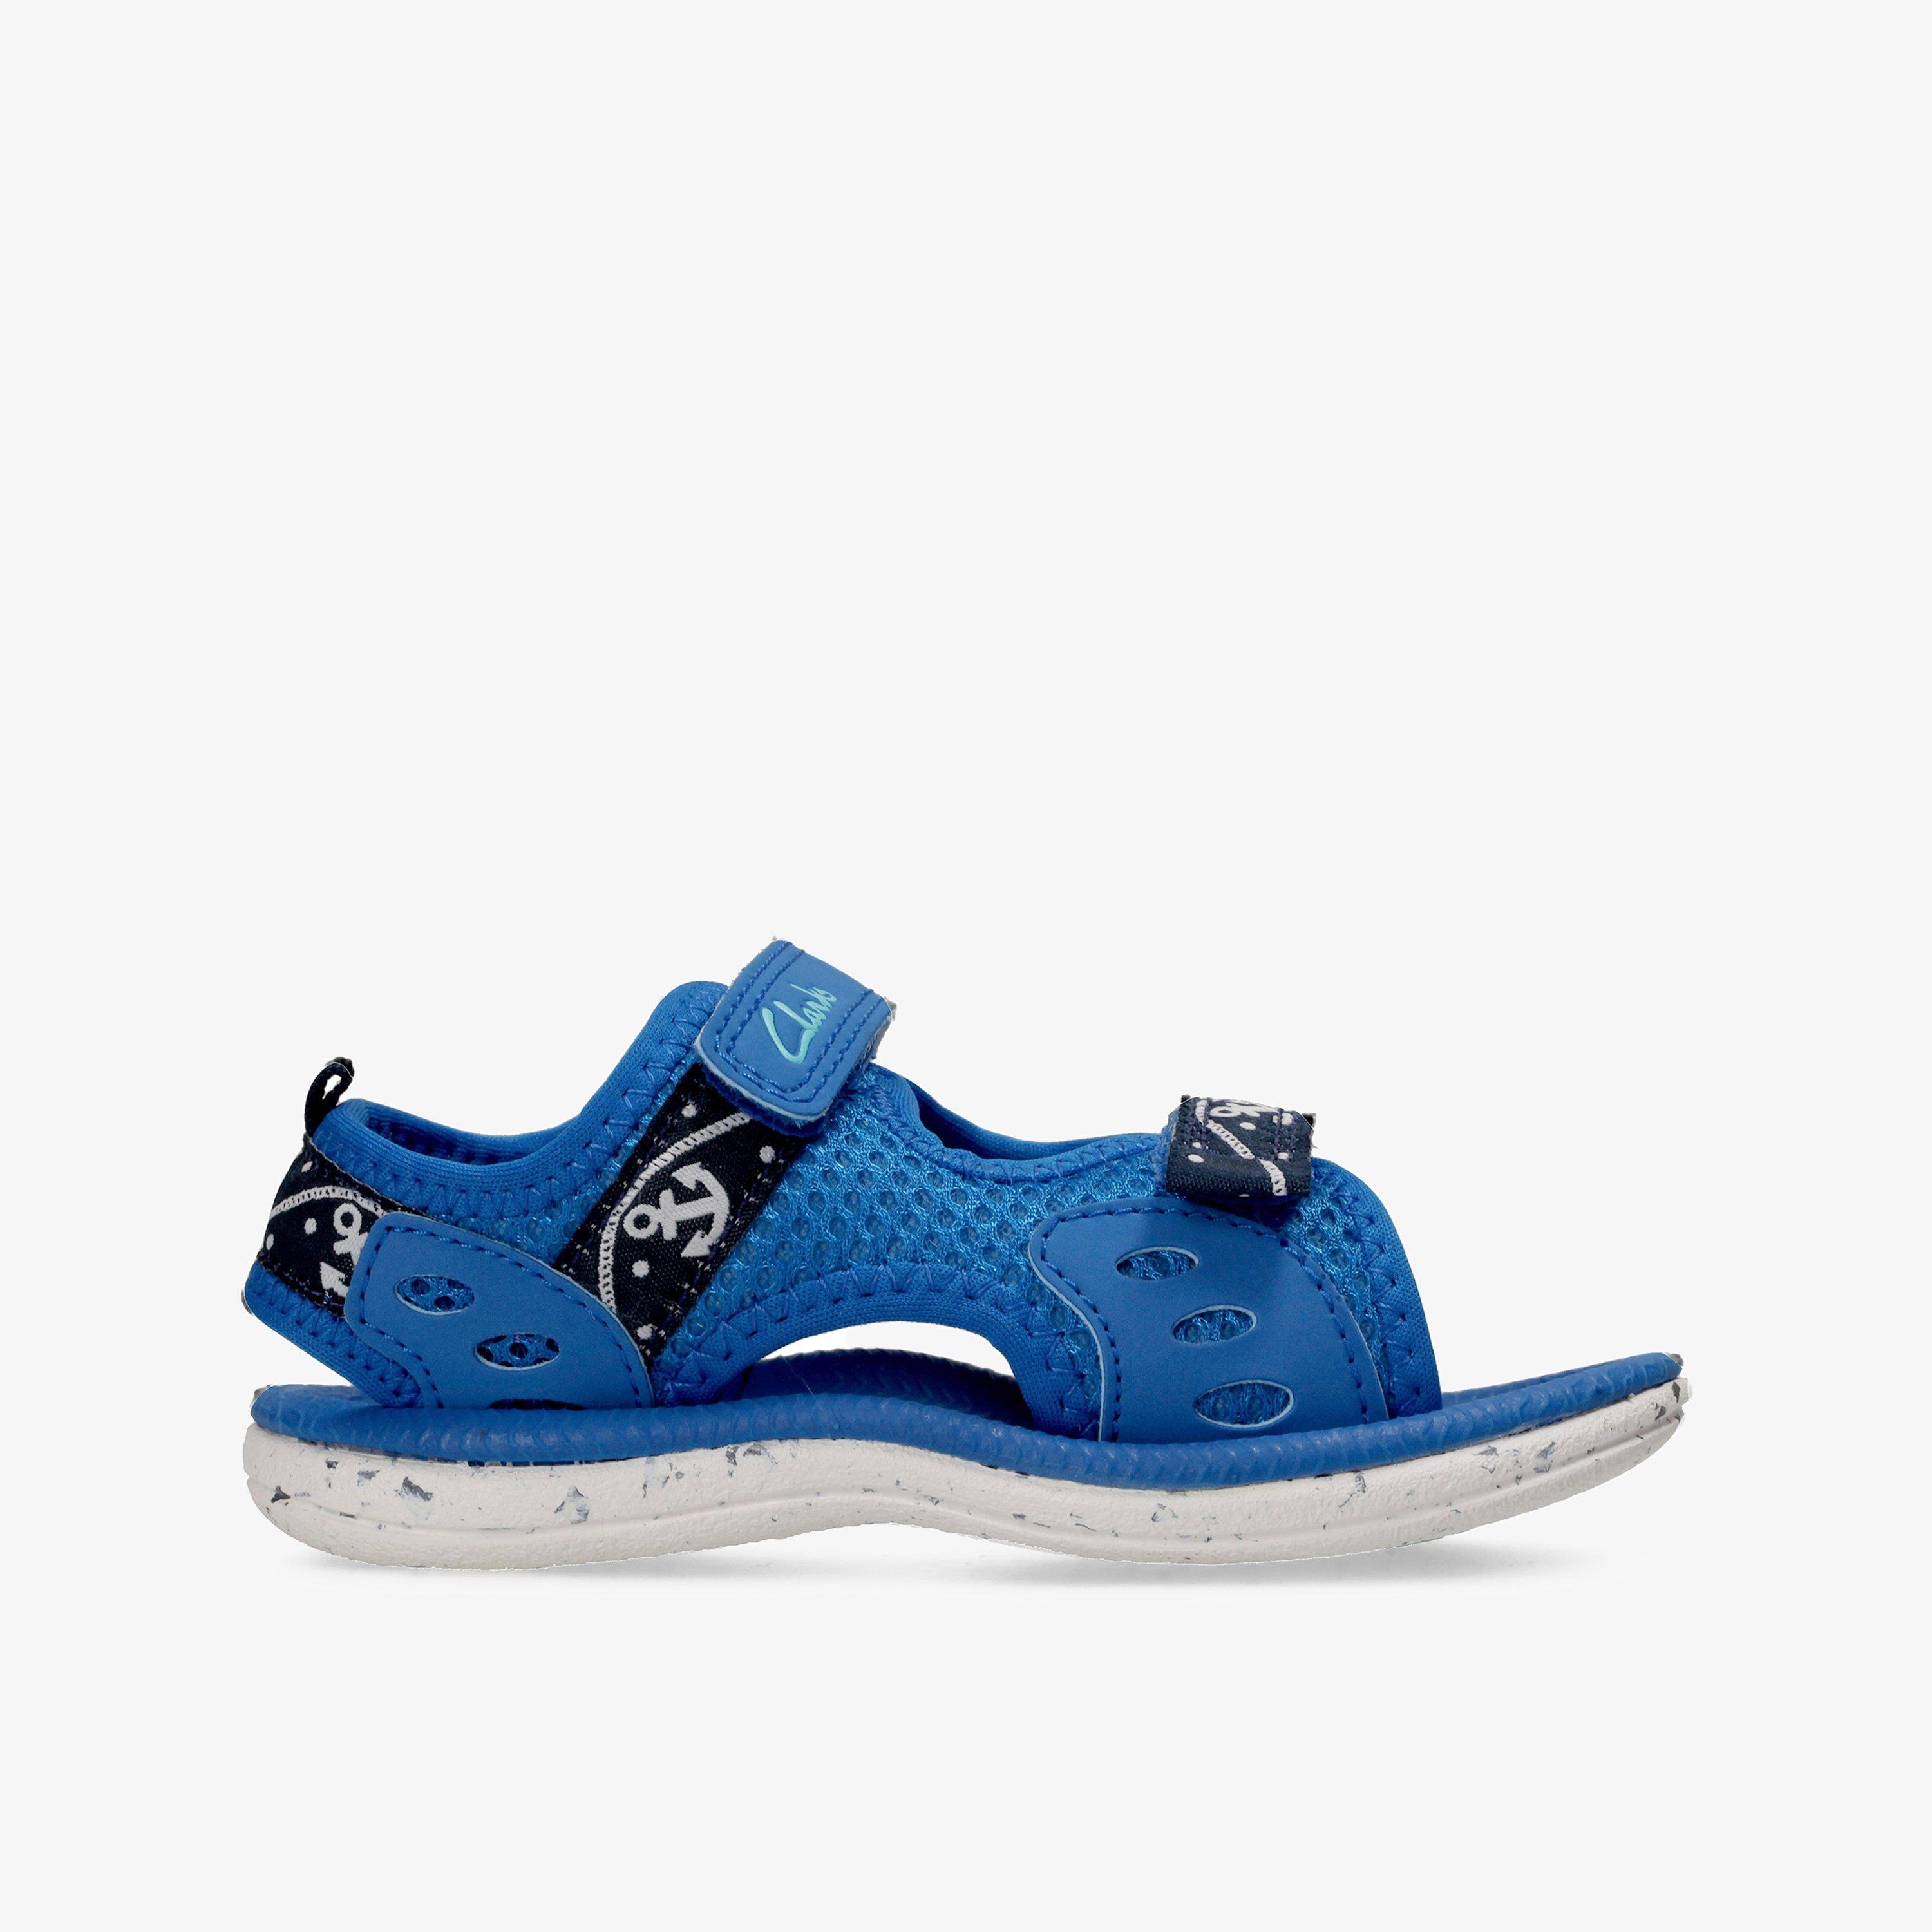 Boys Piranha Boy First Blue Flat Sandals | Clarks Outlet